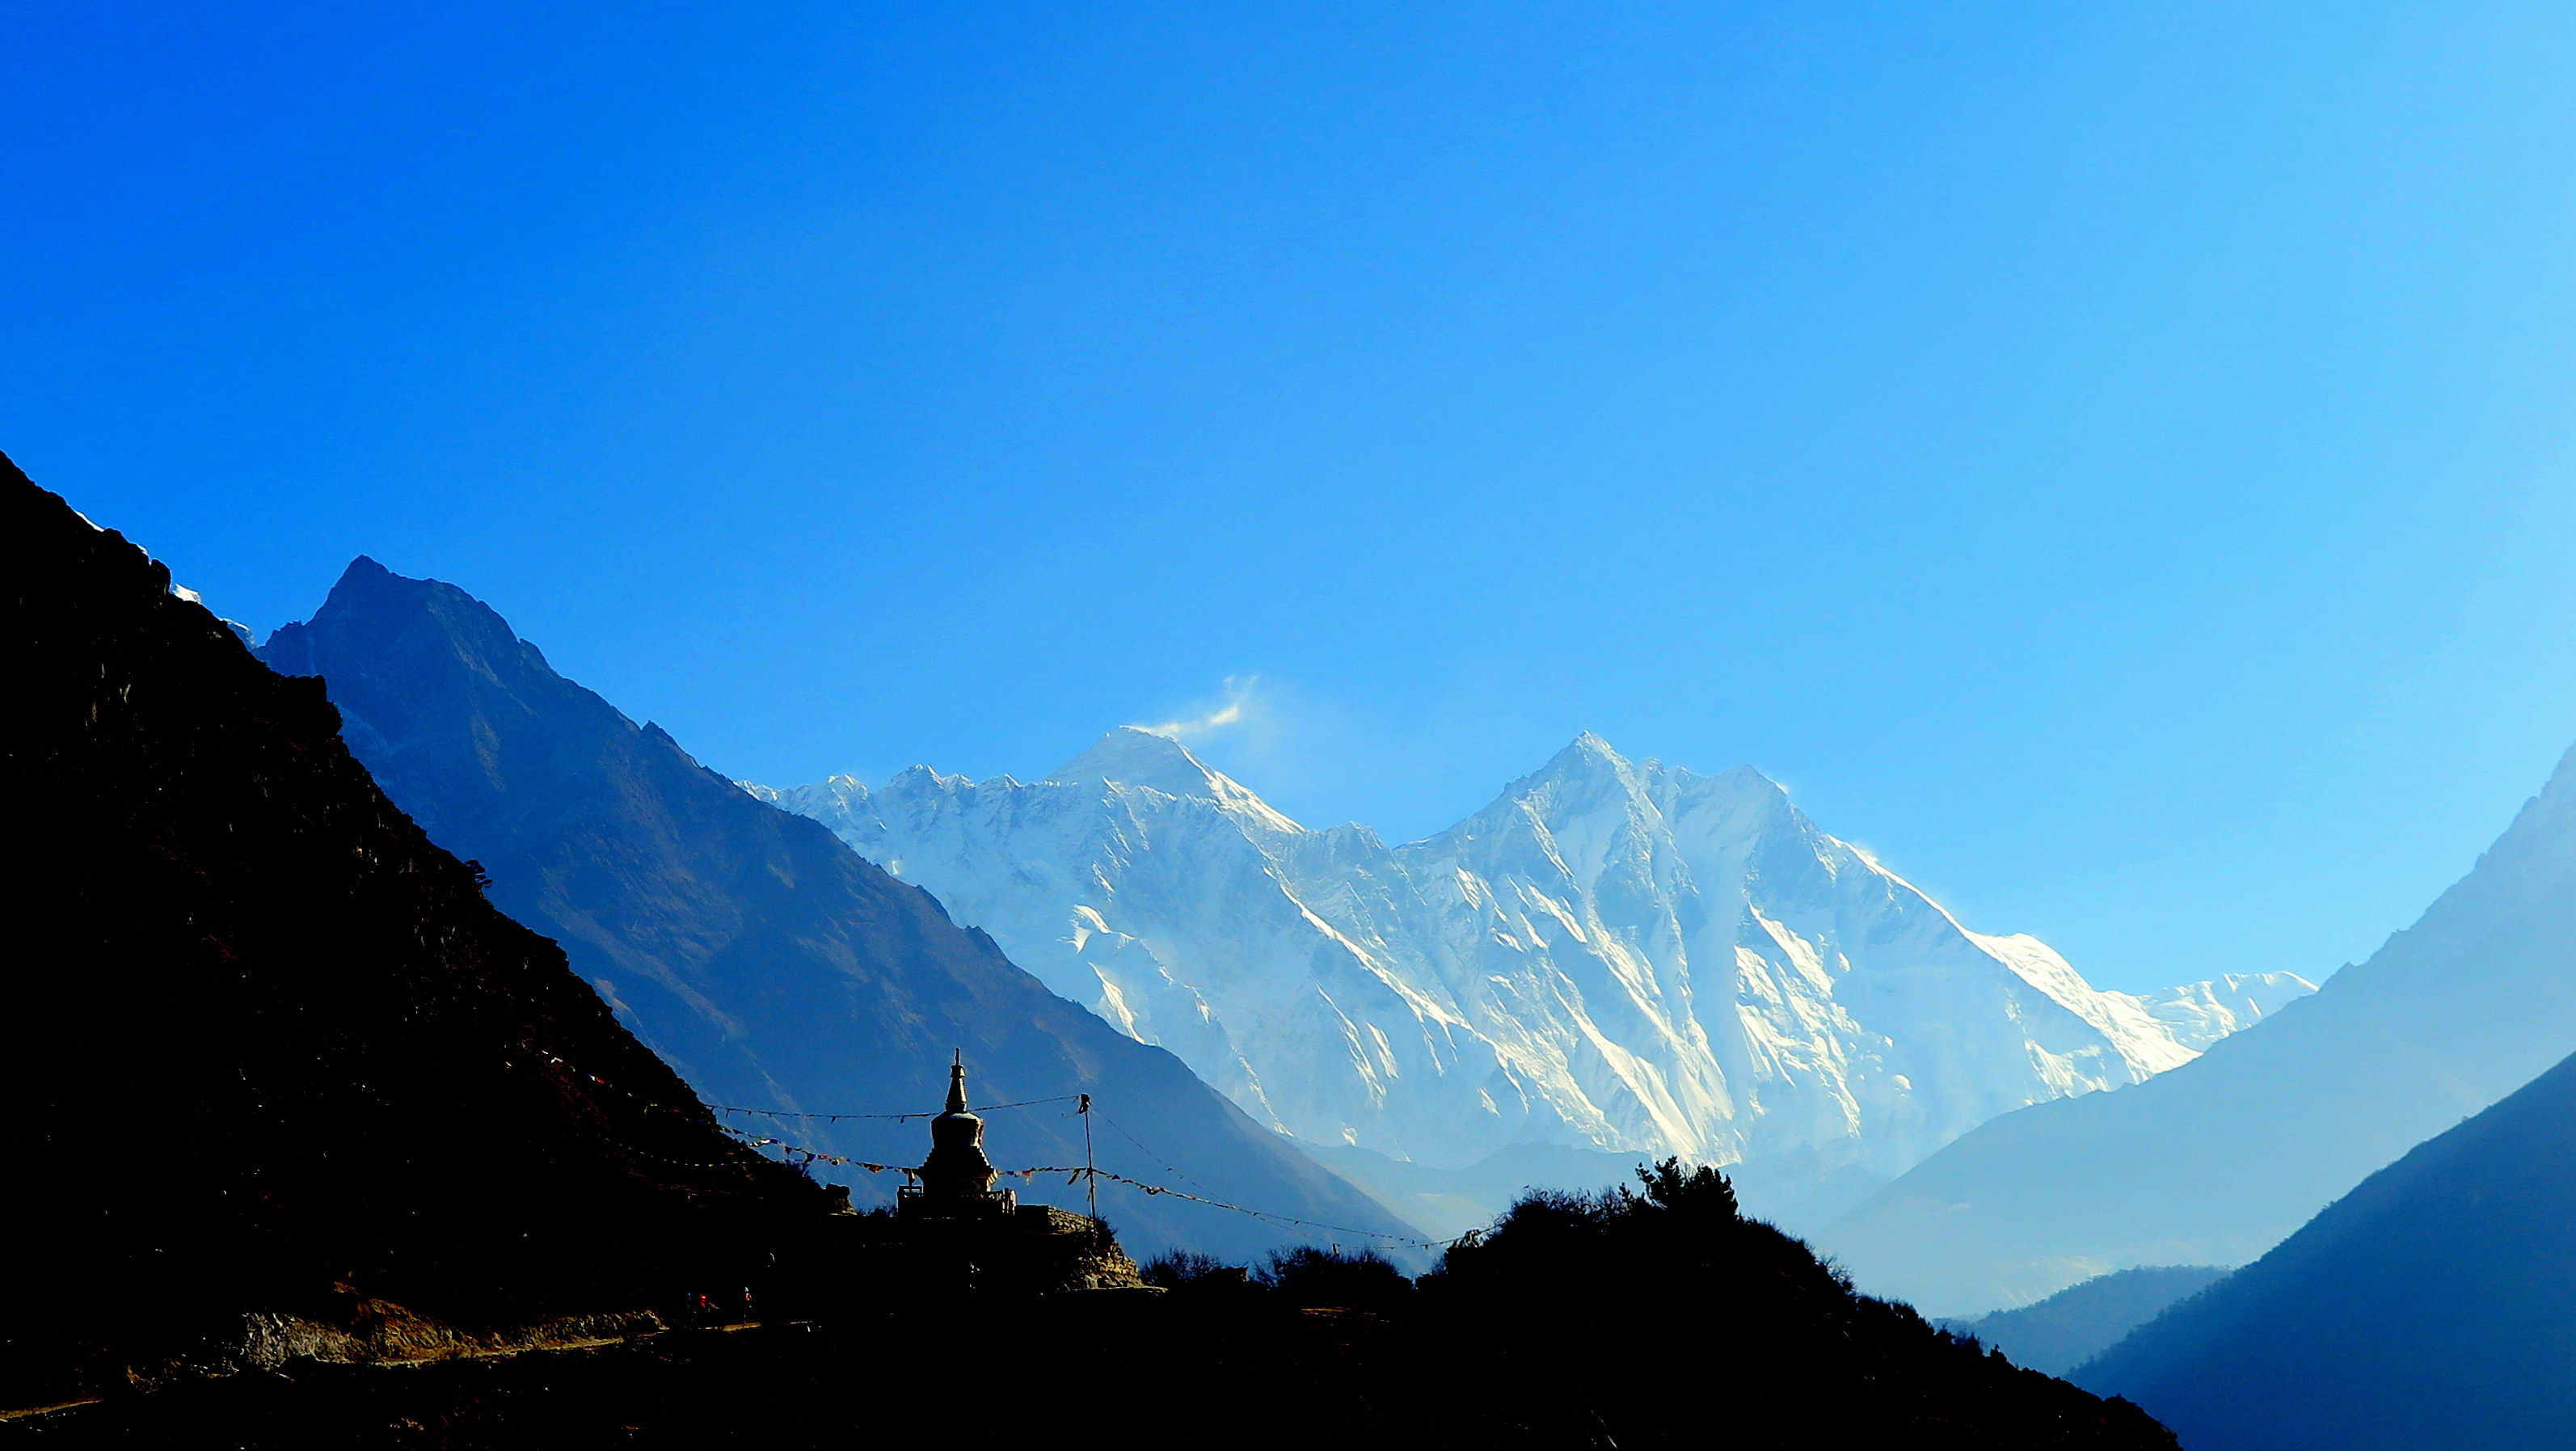 Premier aperçu de l'Everest après Namche Bazar